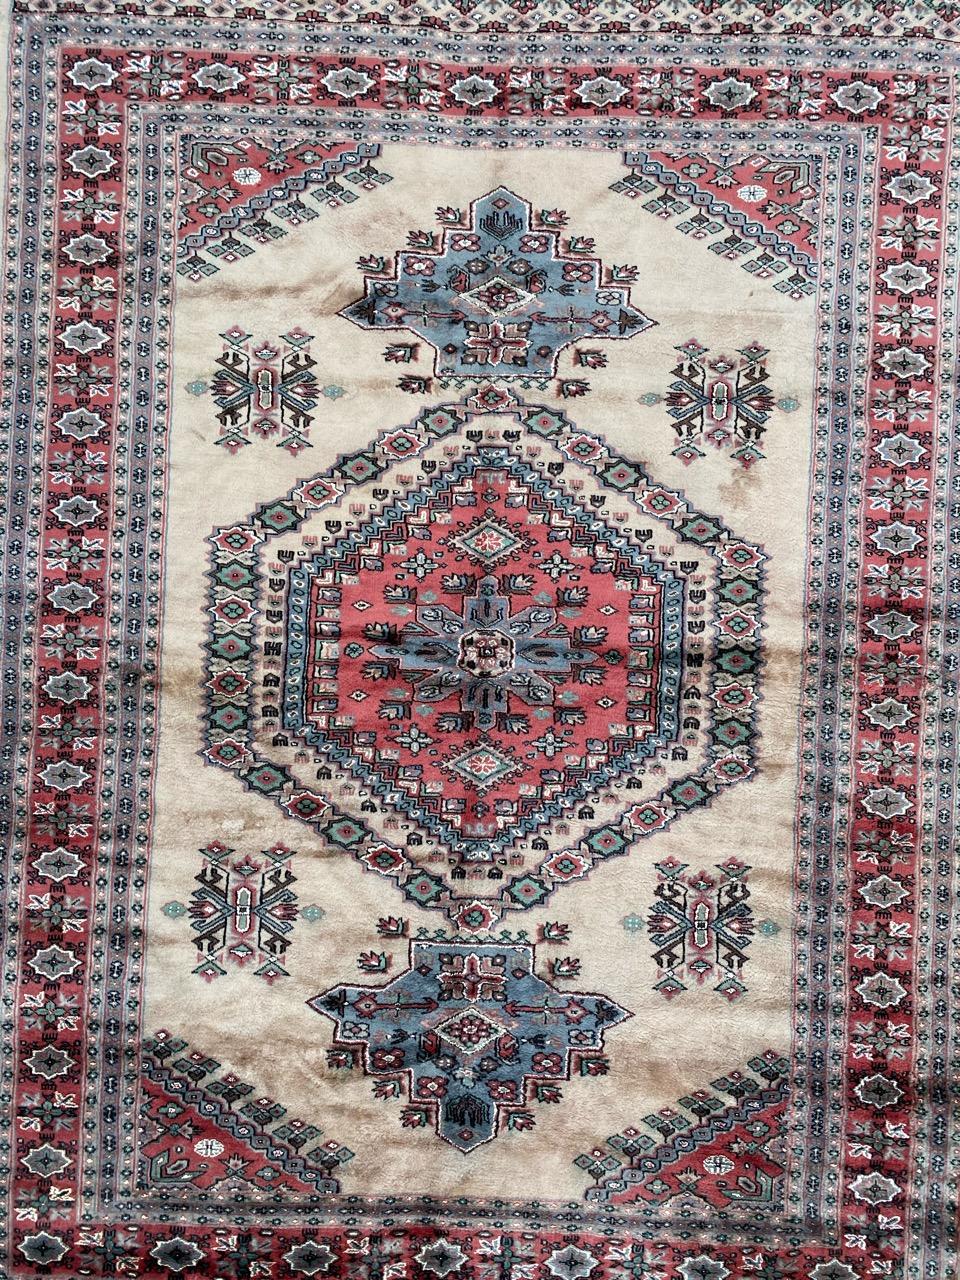 Schöner Teppich aus der Mitte des Jahrhunderts mit schönem geometrischem Muster und schönen Farben, komplett handgeknüpft mit Wolle und Seidensamt auf Baumwollbasis.

✨✨✨
